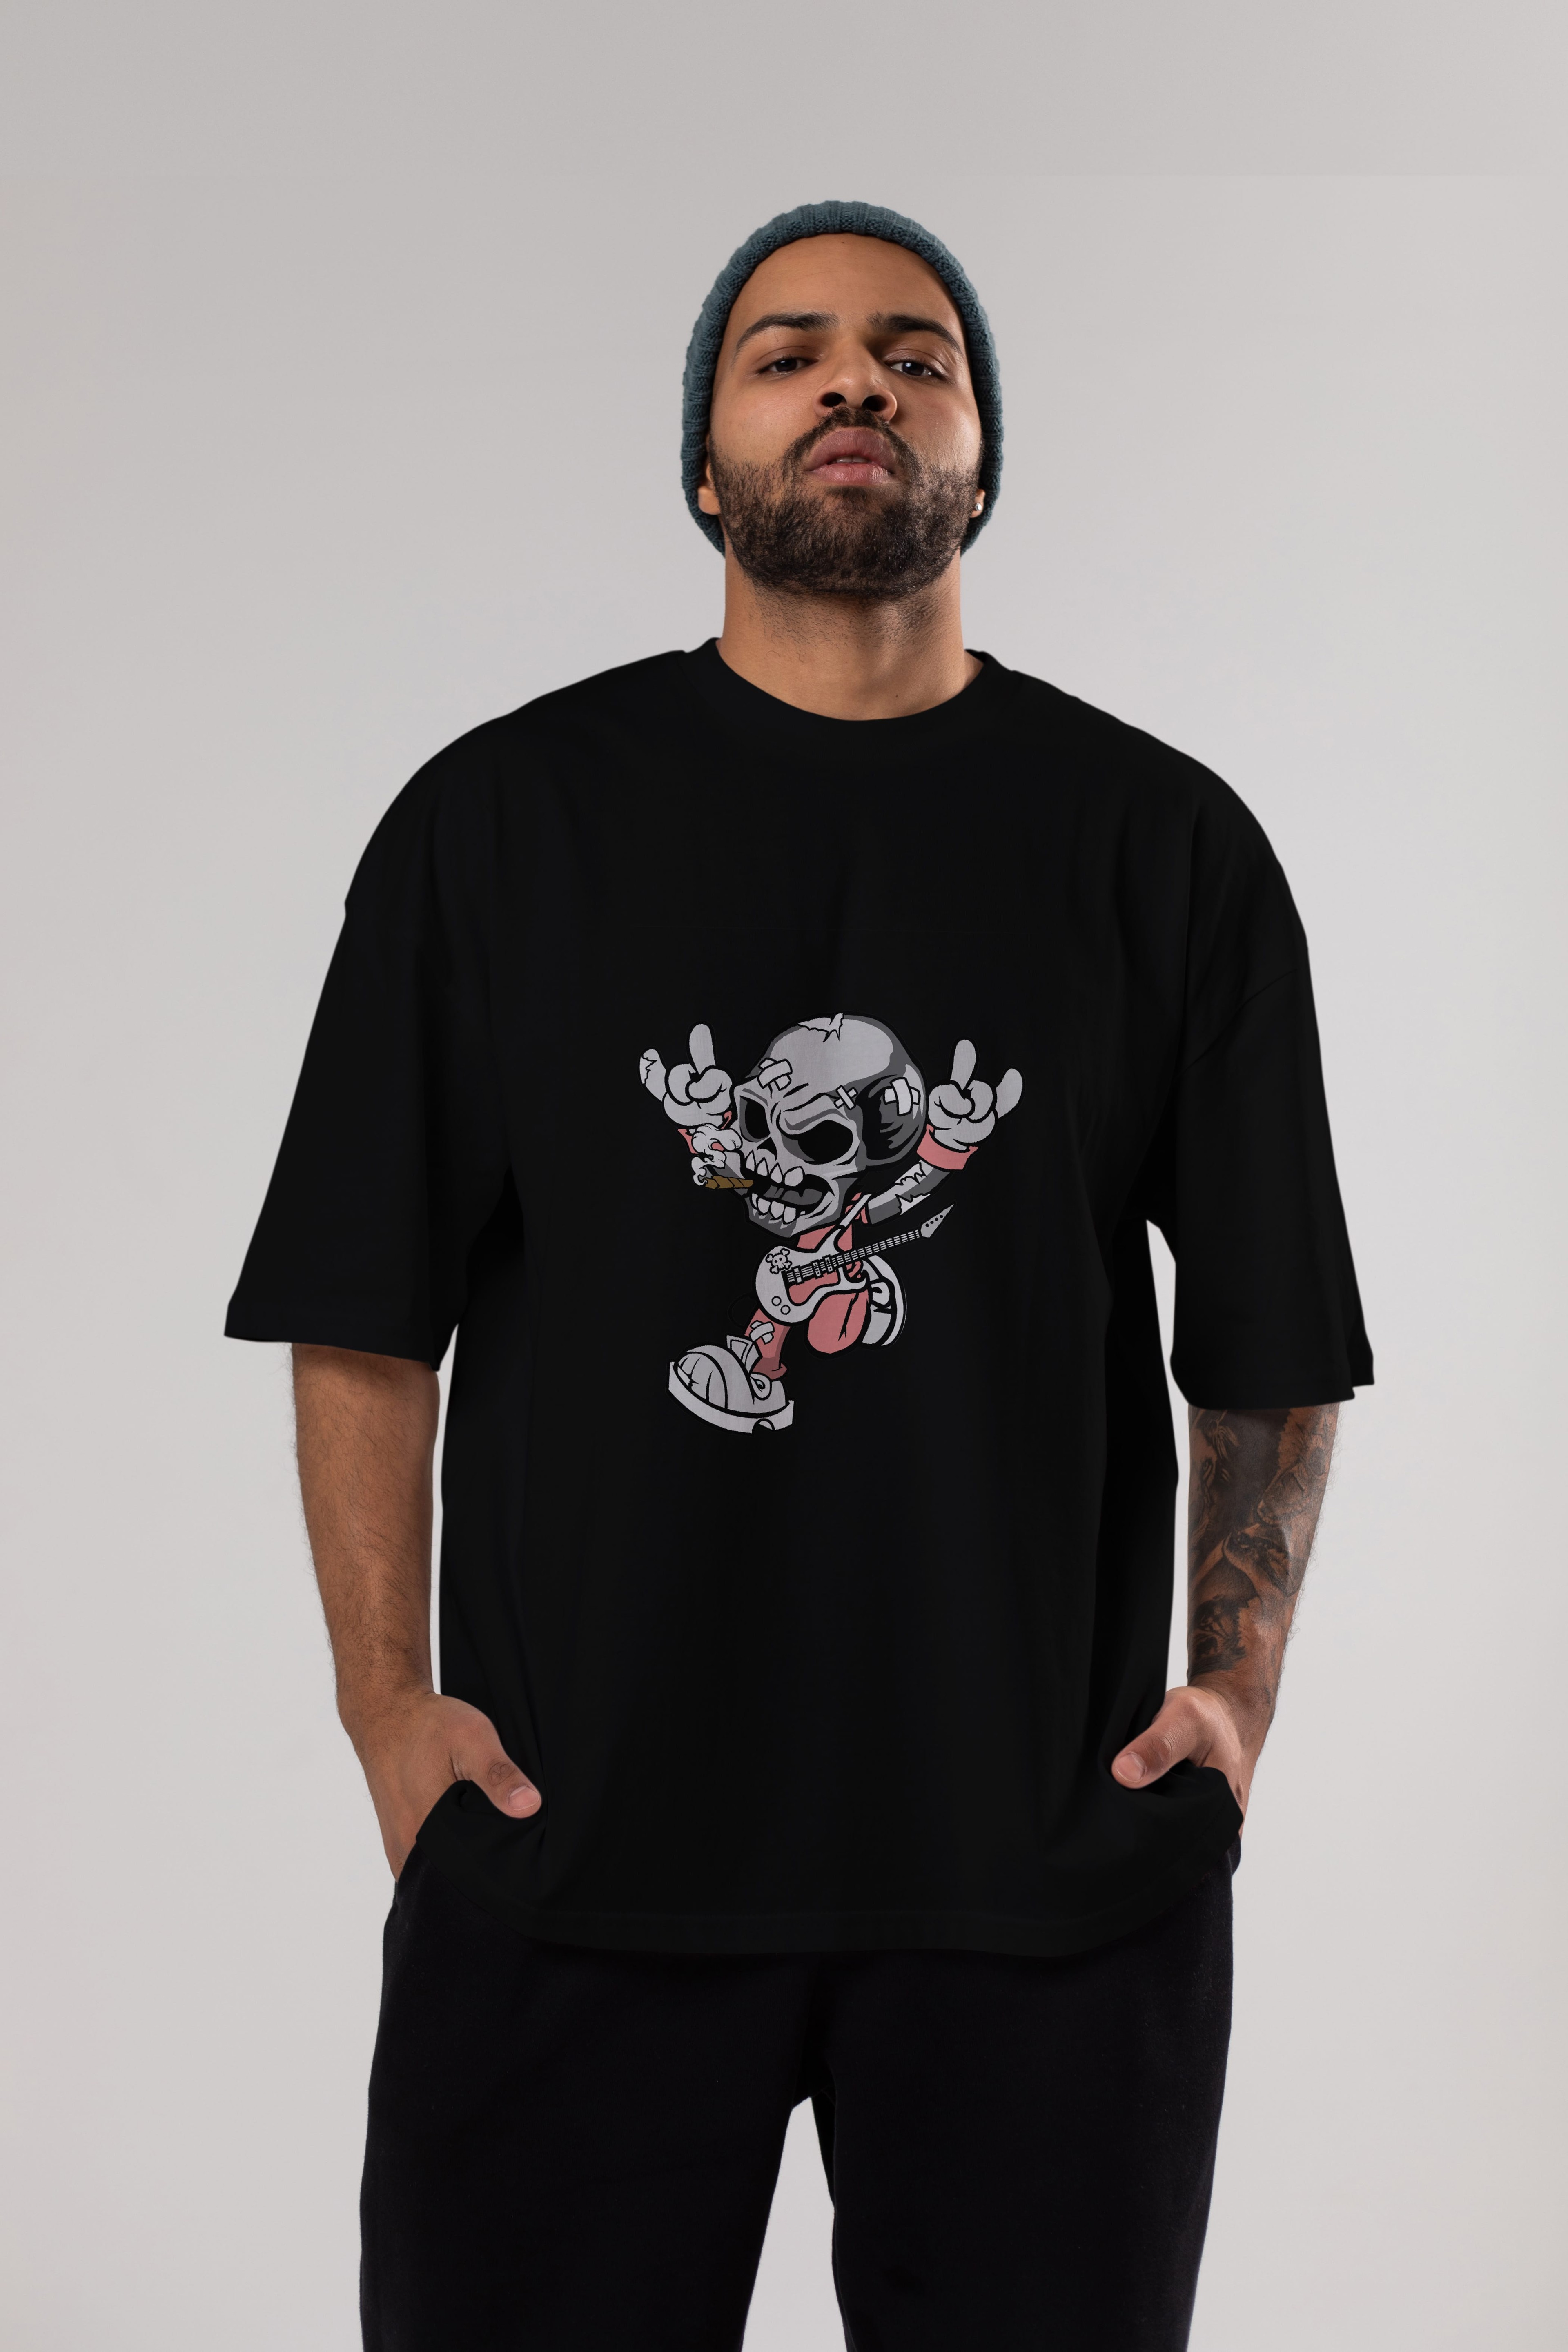 Skull Metal Sign Ön Baskılı Oversize t-shirt Erkek Kadın Unisex %100 Pamuk tişort